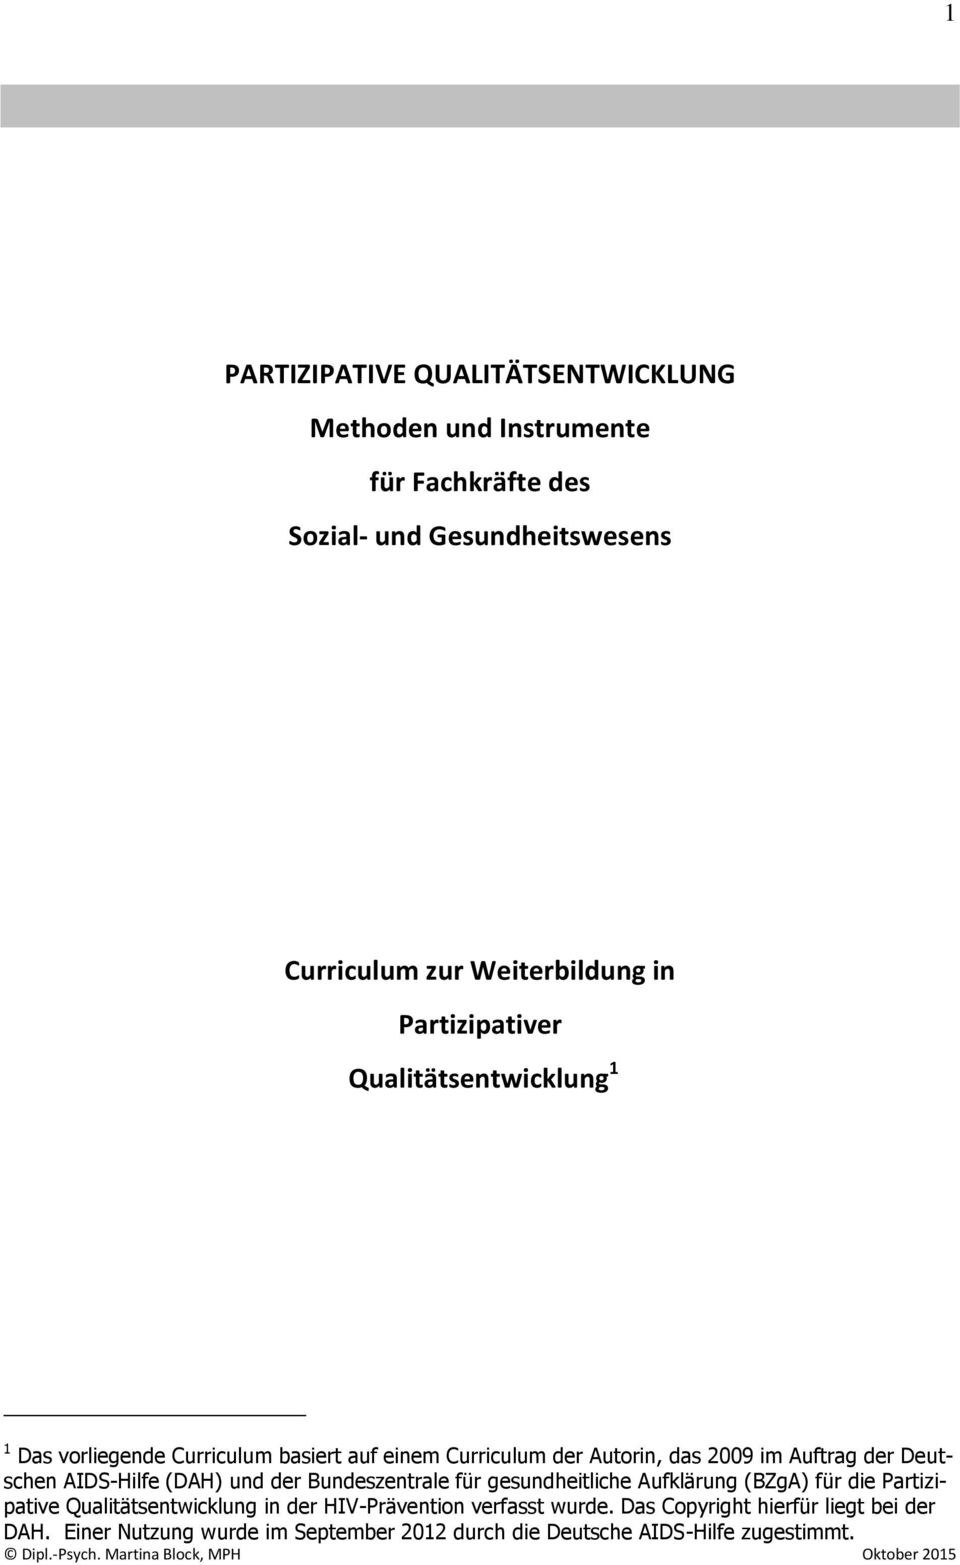 Deutschen AIDS-Hilfe (DAH) und der Bundeszentrale für gesundheitliche Aufklärung (BZgA) für die Partizipative Qualitätsentwicklung in der